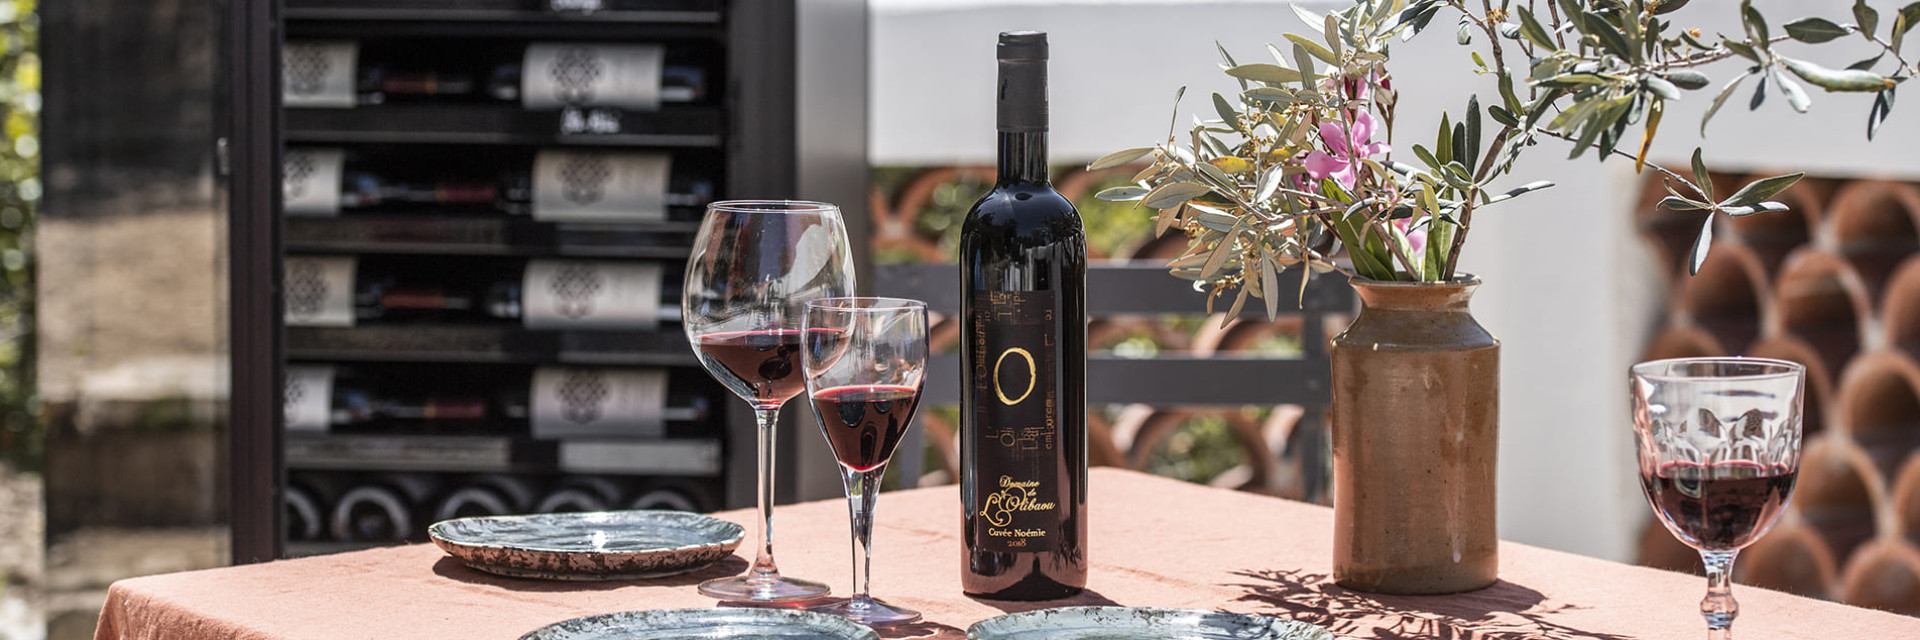 Ein wunderschön gedeckter Tisch auf der Terrasse, ein gutes Essen und eine gute Flasche Wein; um sich gut zu empfangen oder einen romantischen Moment zu teilen.